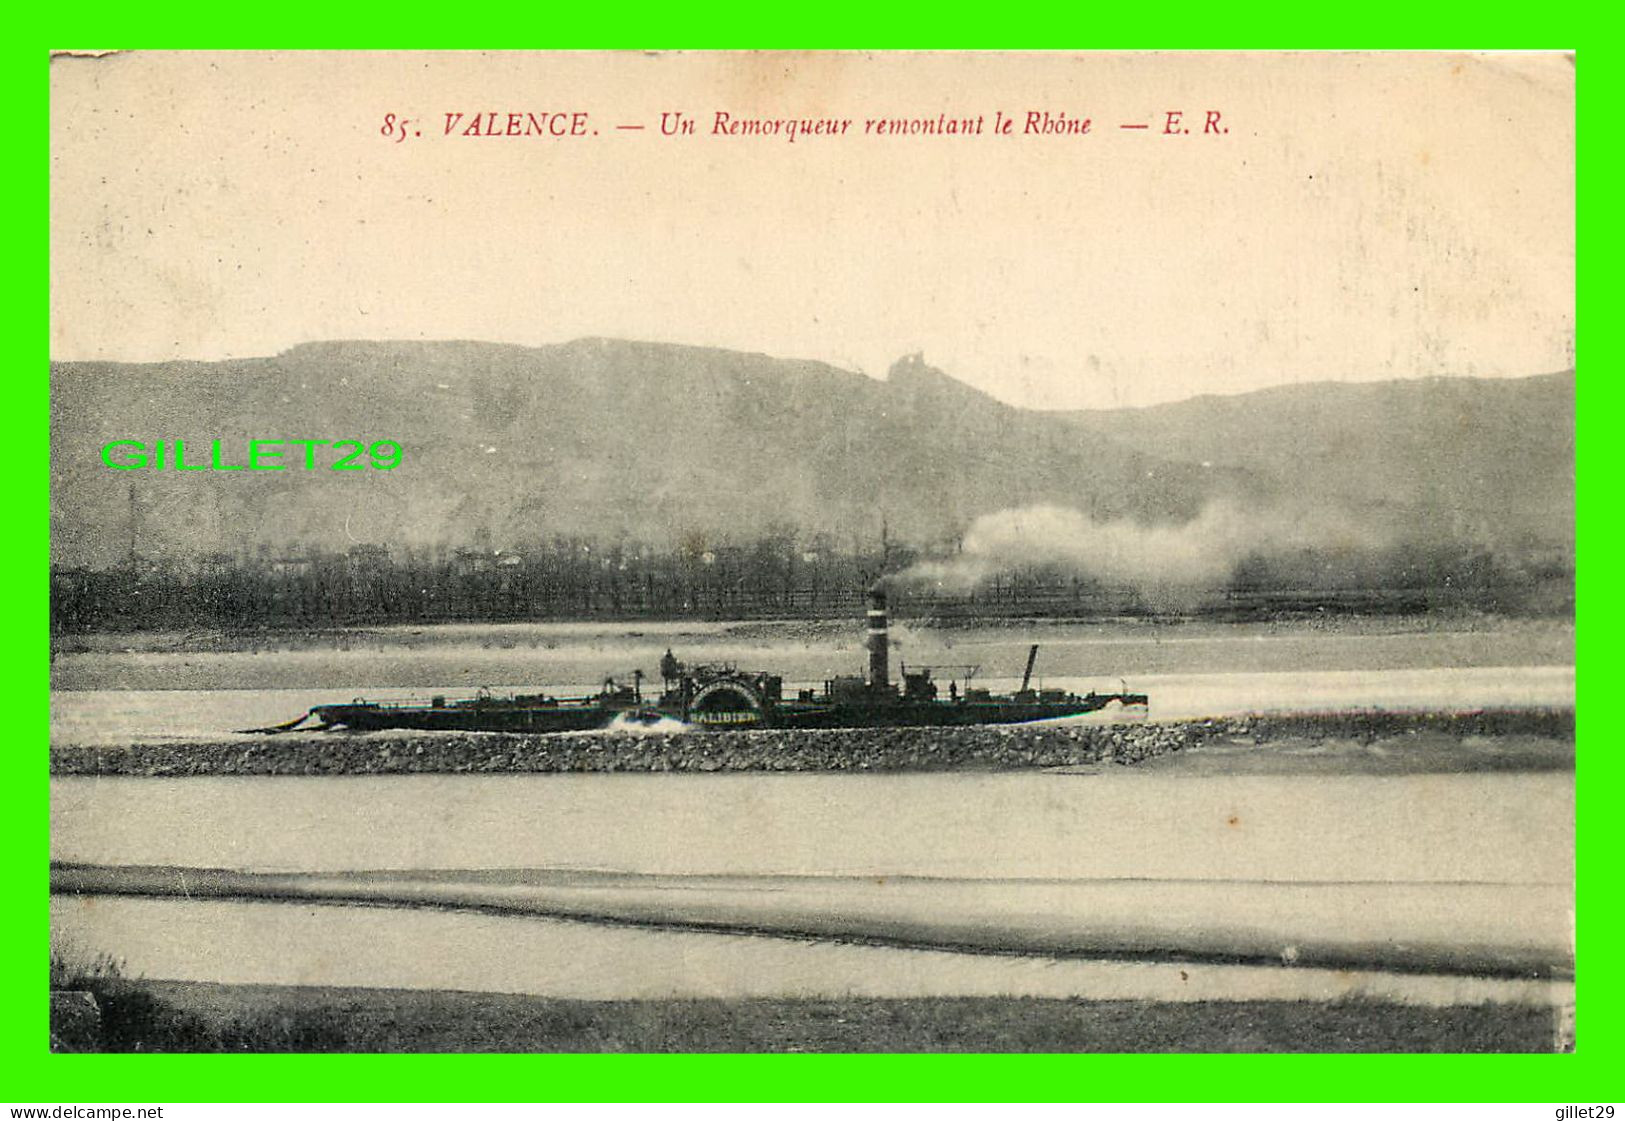 SHIP, BATEAU - " GALIBIER " - UN REMORQUEUR REMONTANT LE RHÔNE - VALENCE (26) - E. R. - .CRITE EN 1917 - - Tugboats